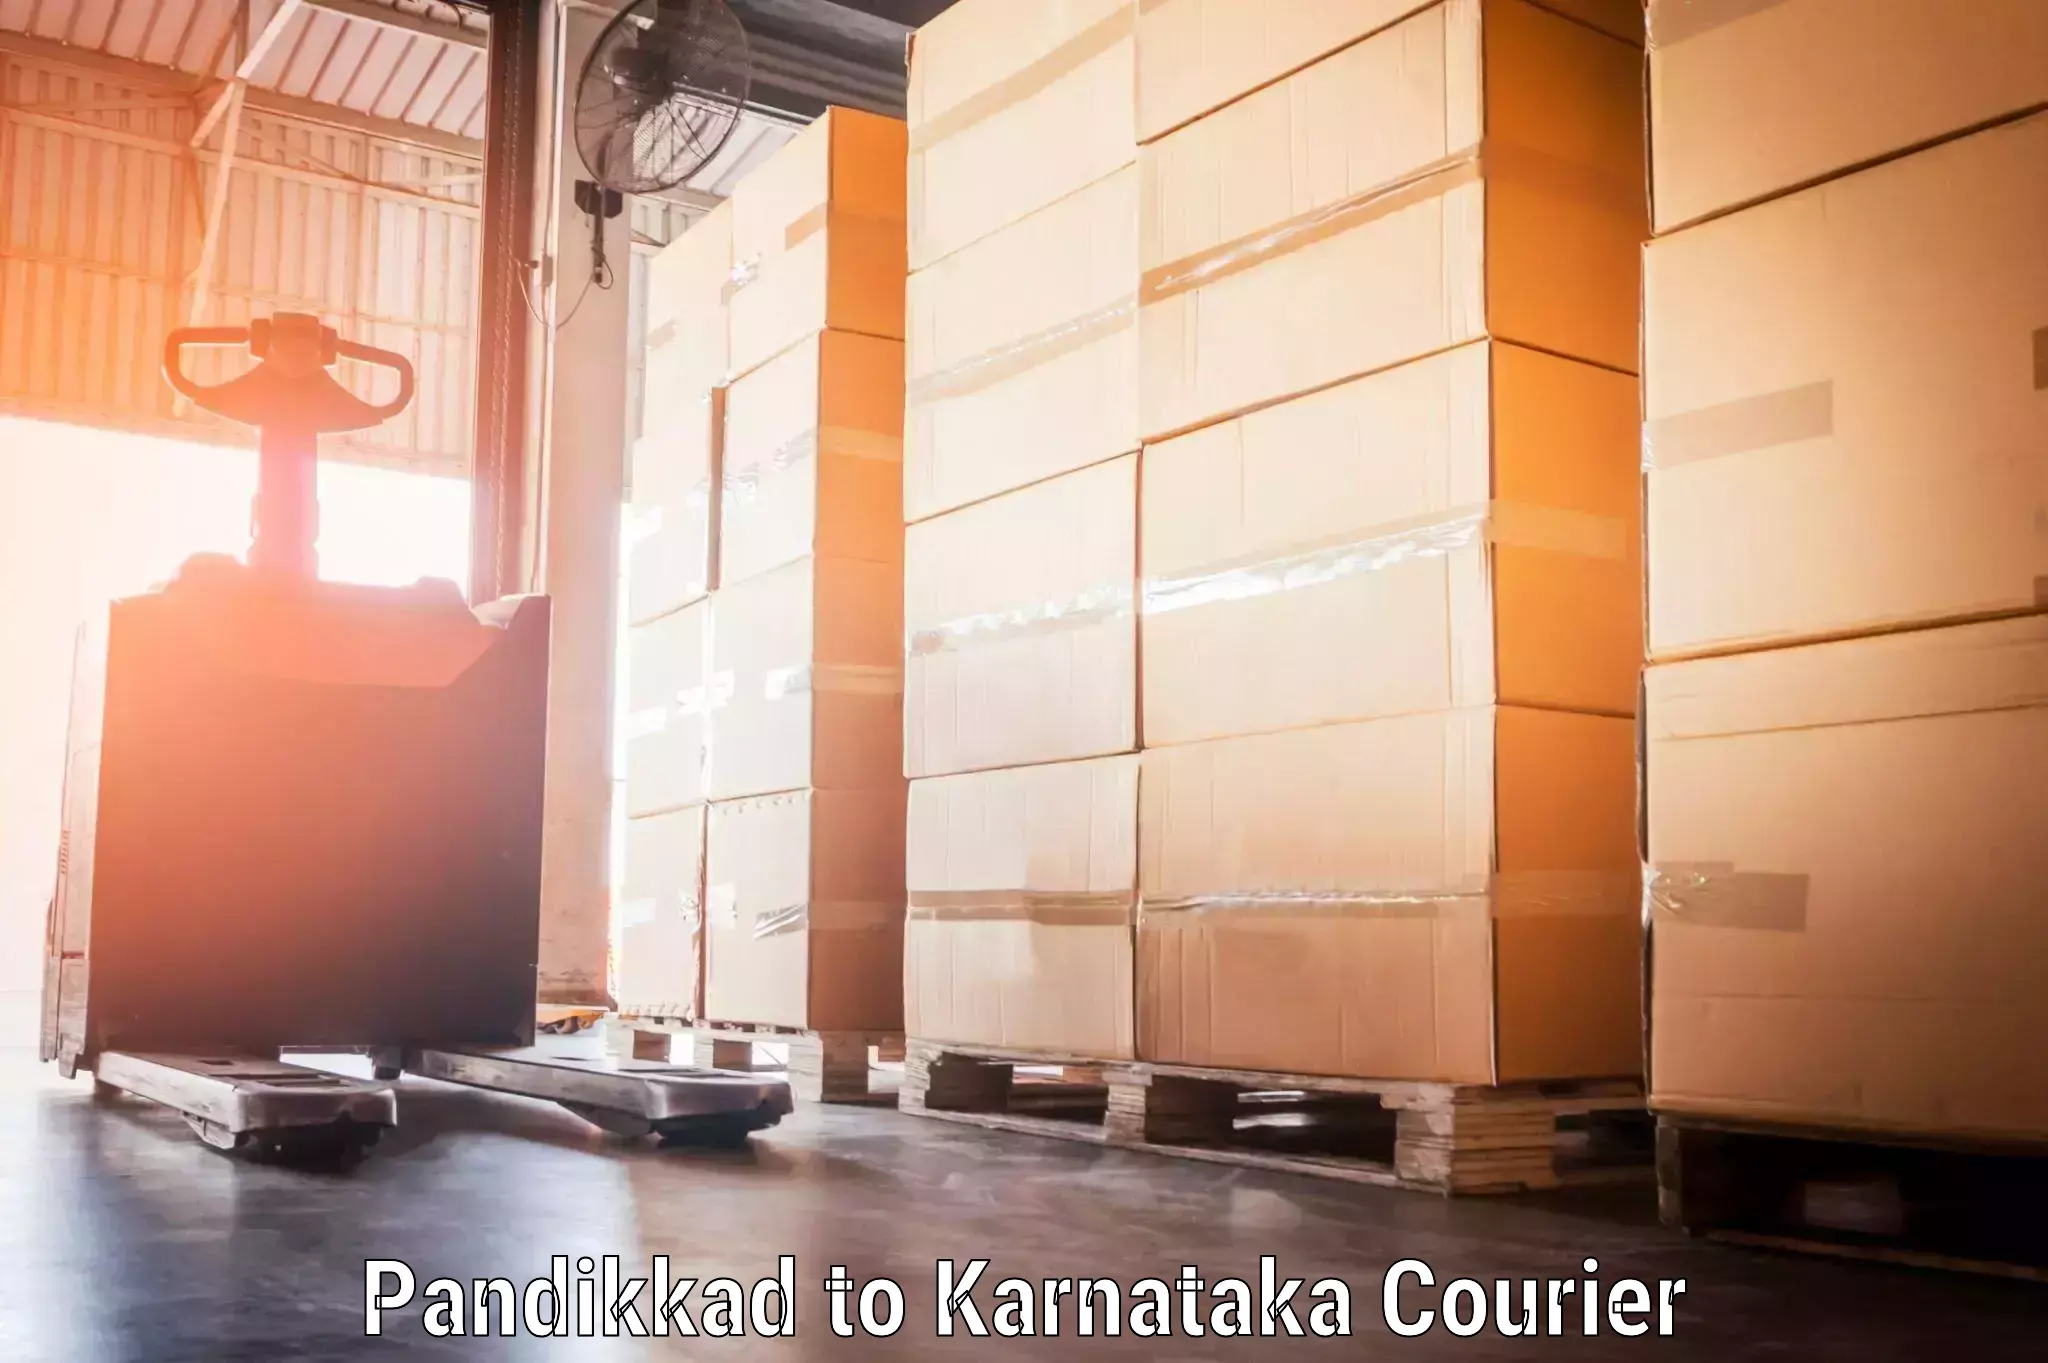 Luggage transport operations Pandikkad to Piriyapatna